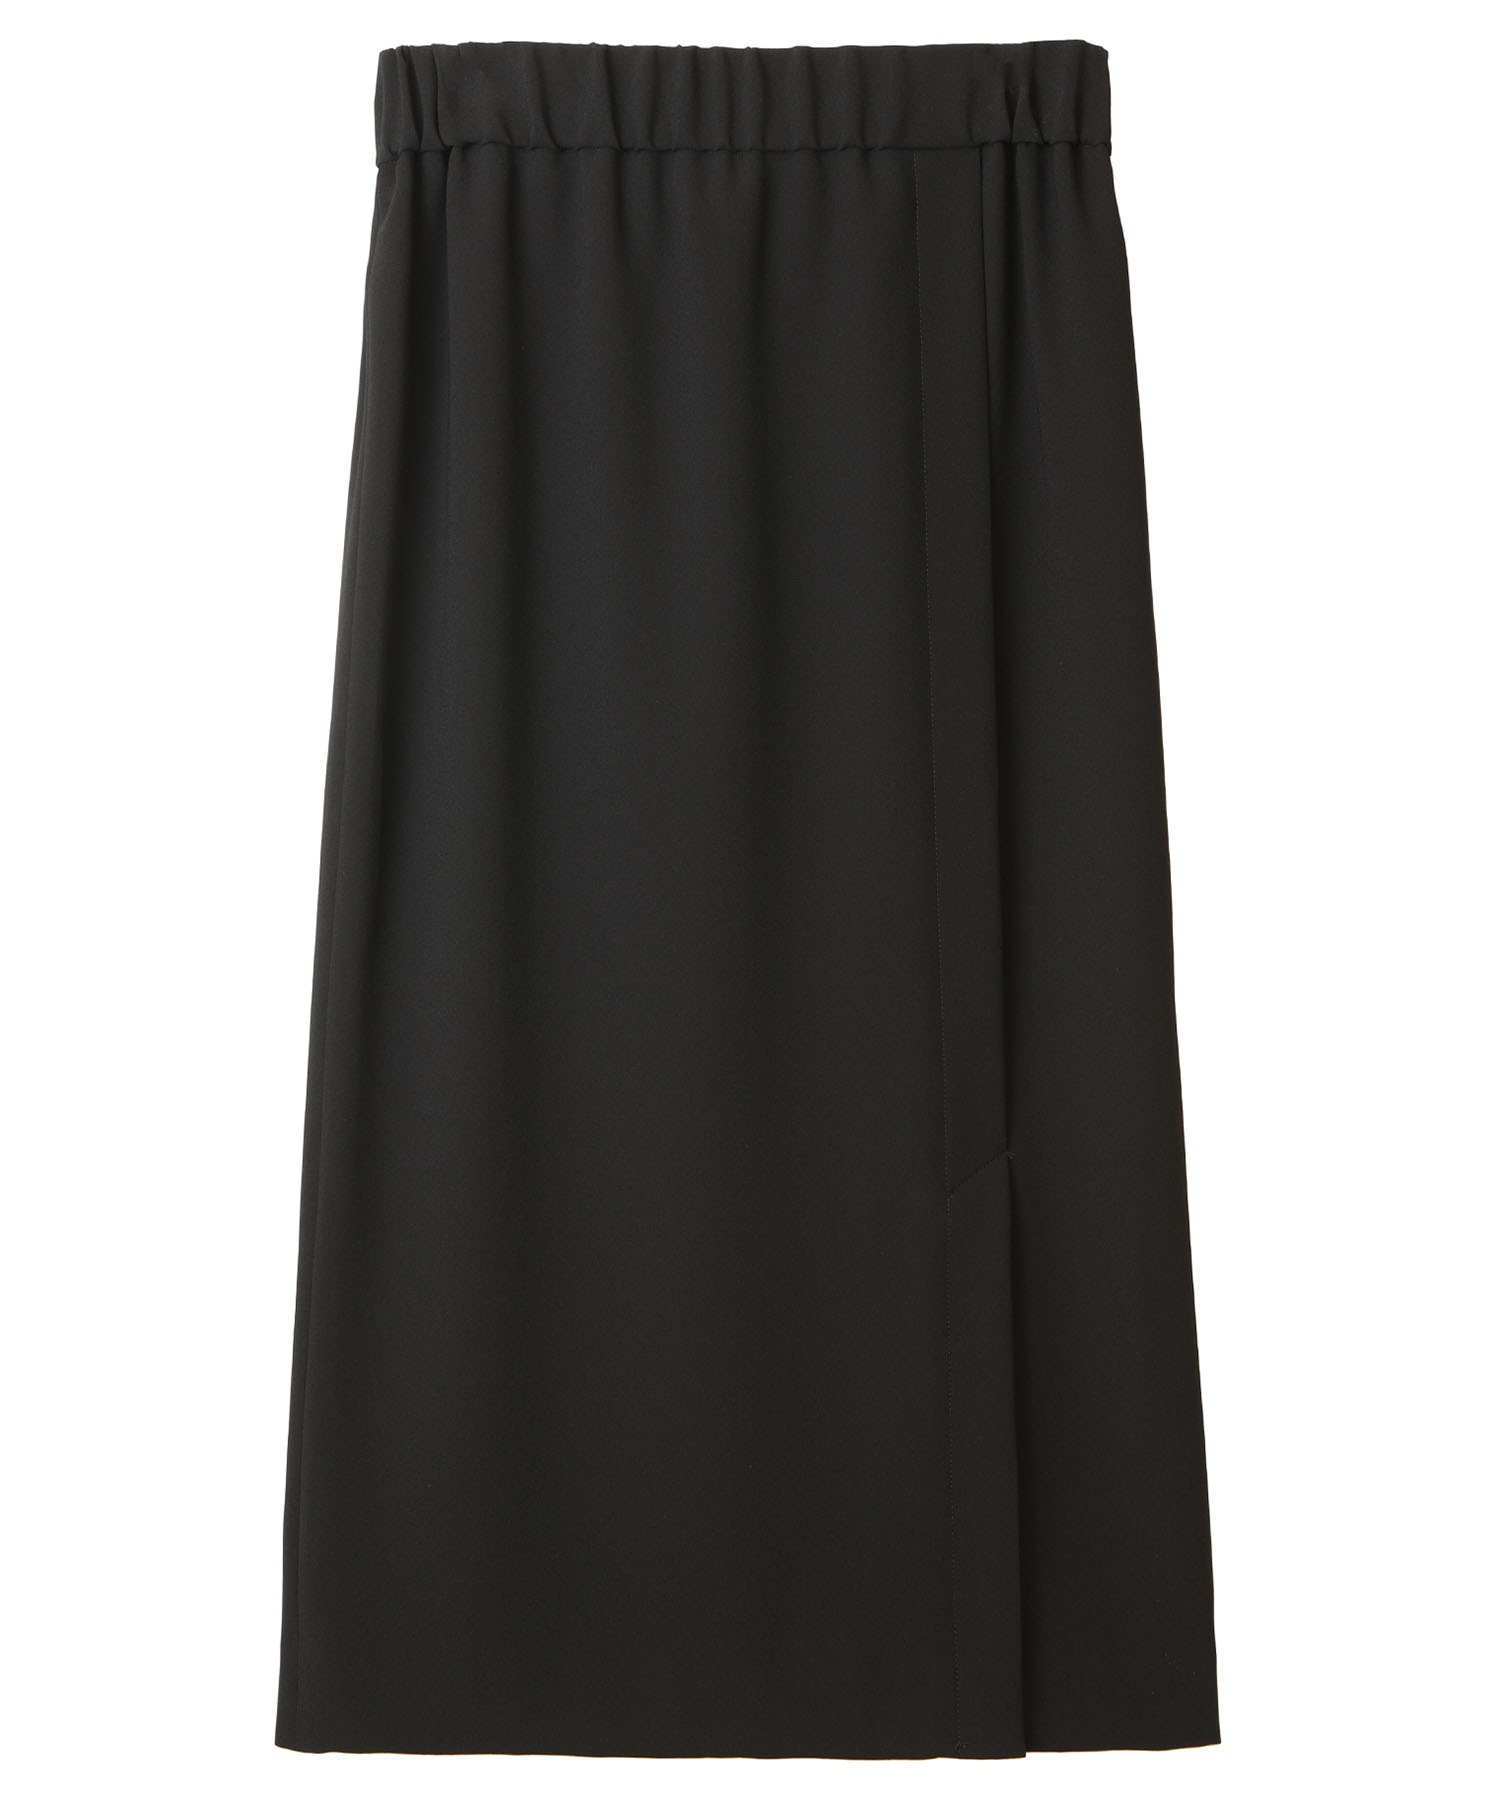 新しいスタイル 1er 【公式ショップ】 Arrondissementシルキージョーゼットイージータイトスカート